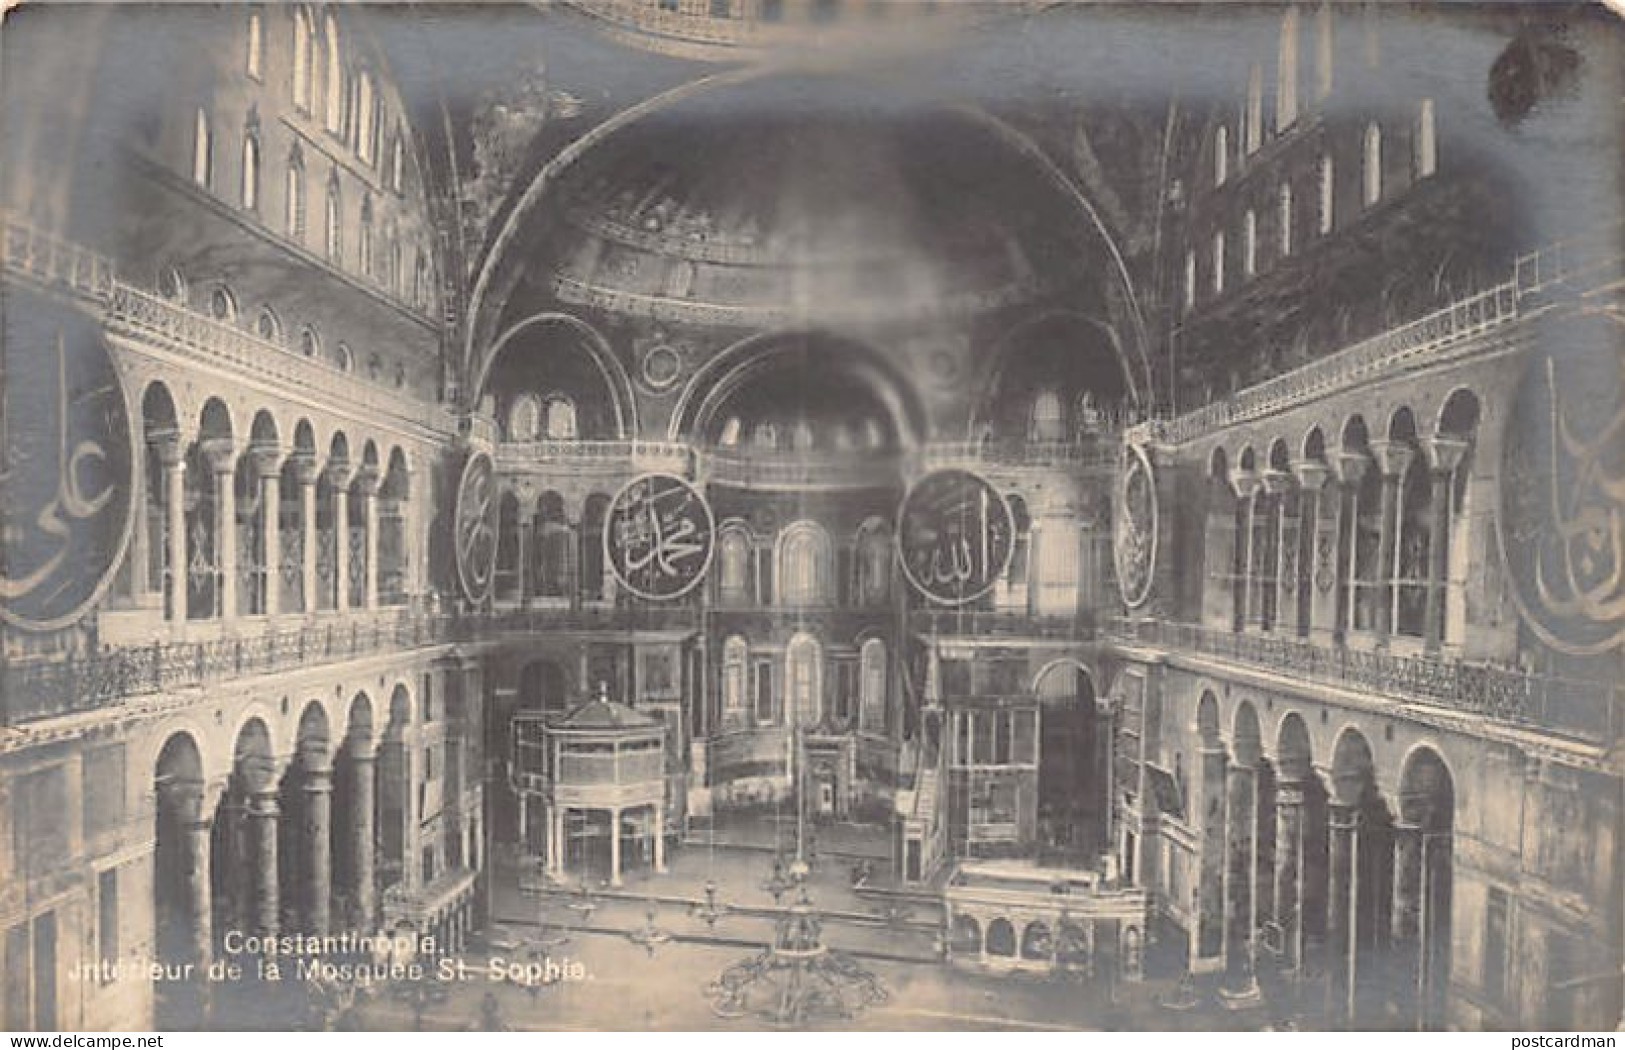 Turkey - ISTANBUL - Interior Of The Hagia Sophia - - Intérieur De La Mosquée Sainte-Sophie - Publ. M.J.C. 137 - Turkey